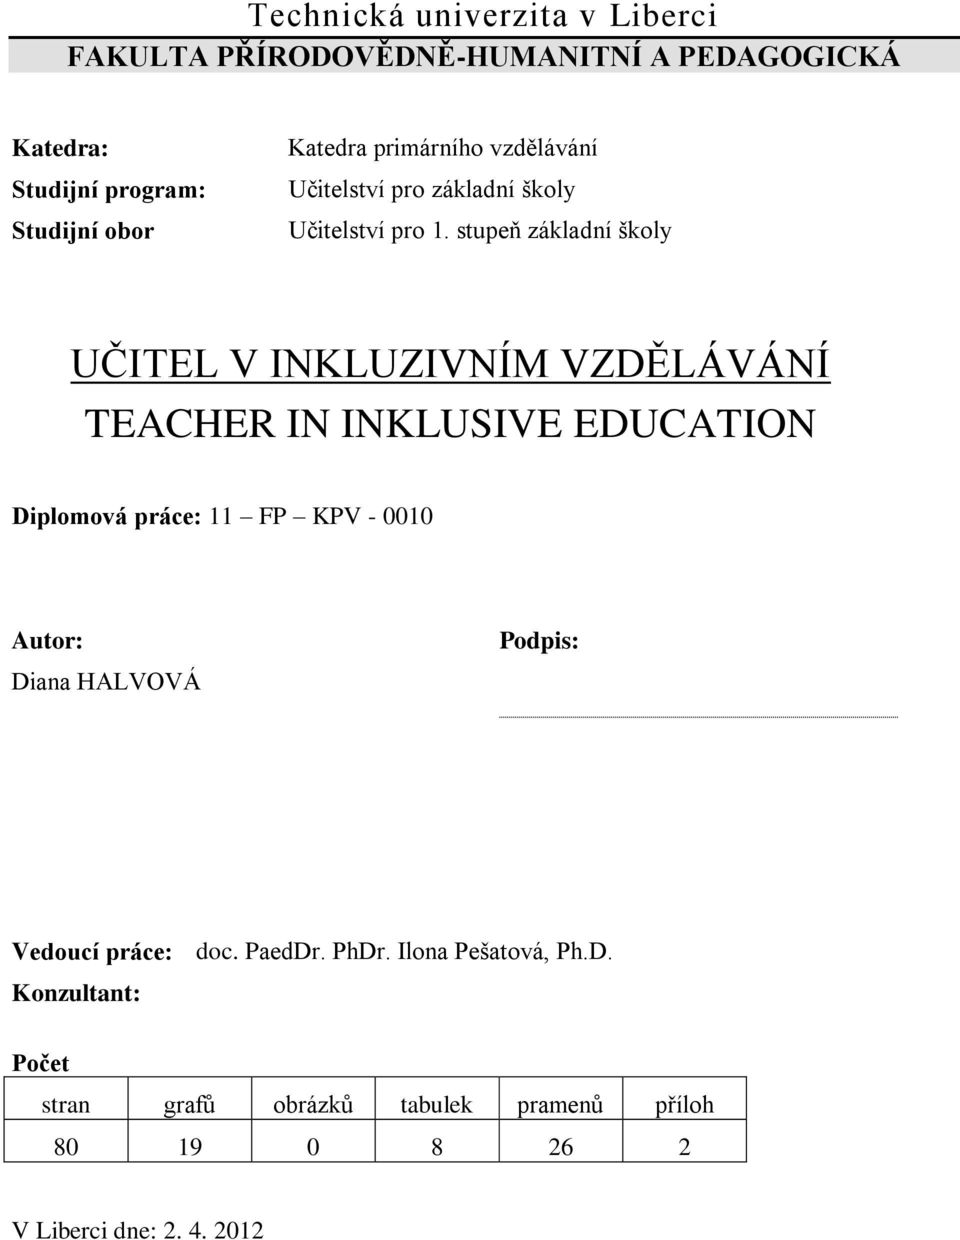 stupeň základní školy UČITEL V INKLUZIVNÍM VZDĚLÁVÁNÍ TEACHER IN INKLUSIVE EDUCATION Diplomová práce: 11 FP KPV - 0010